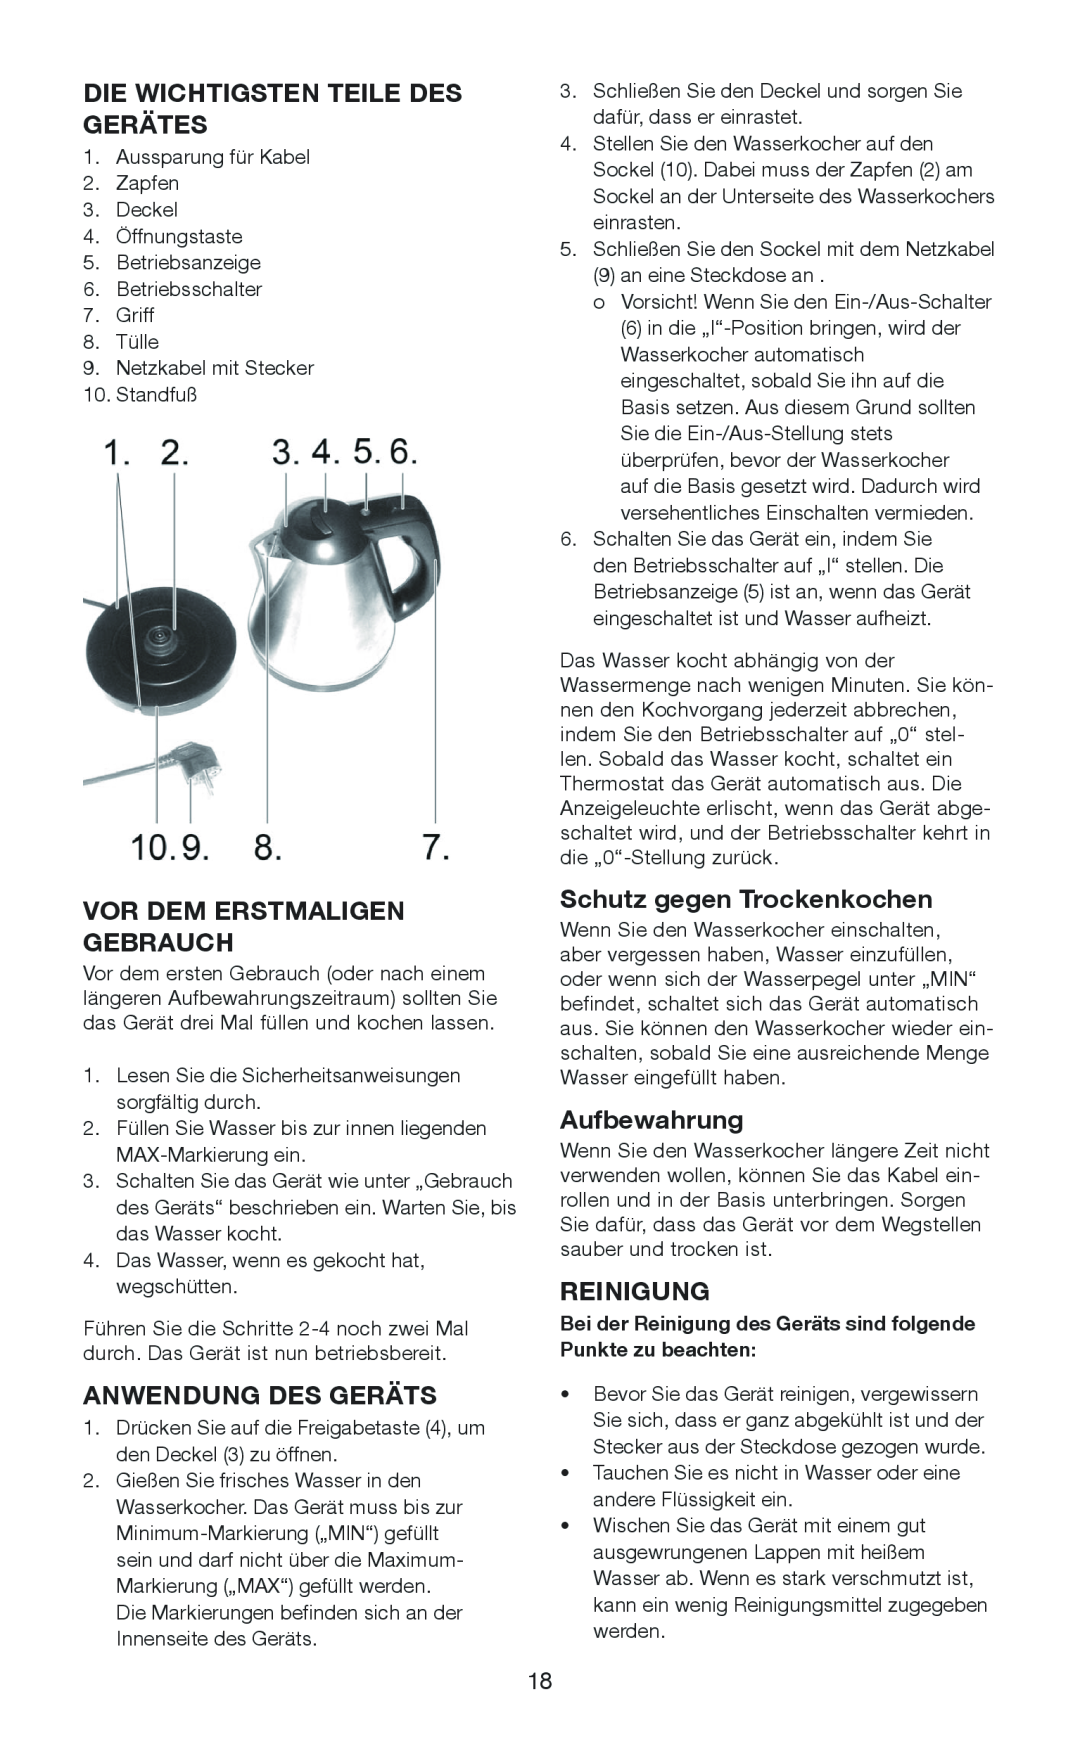 Melissa 645-103 manual Die Wichtigsten Teile Des Gerätes, Vor Dem Erstmaligen Gebrauch, Anwendung Des Geräts, Aufbewahrung 